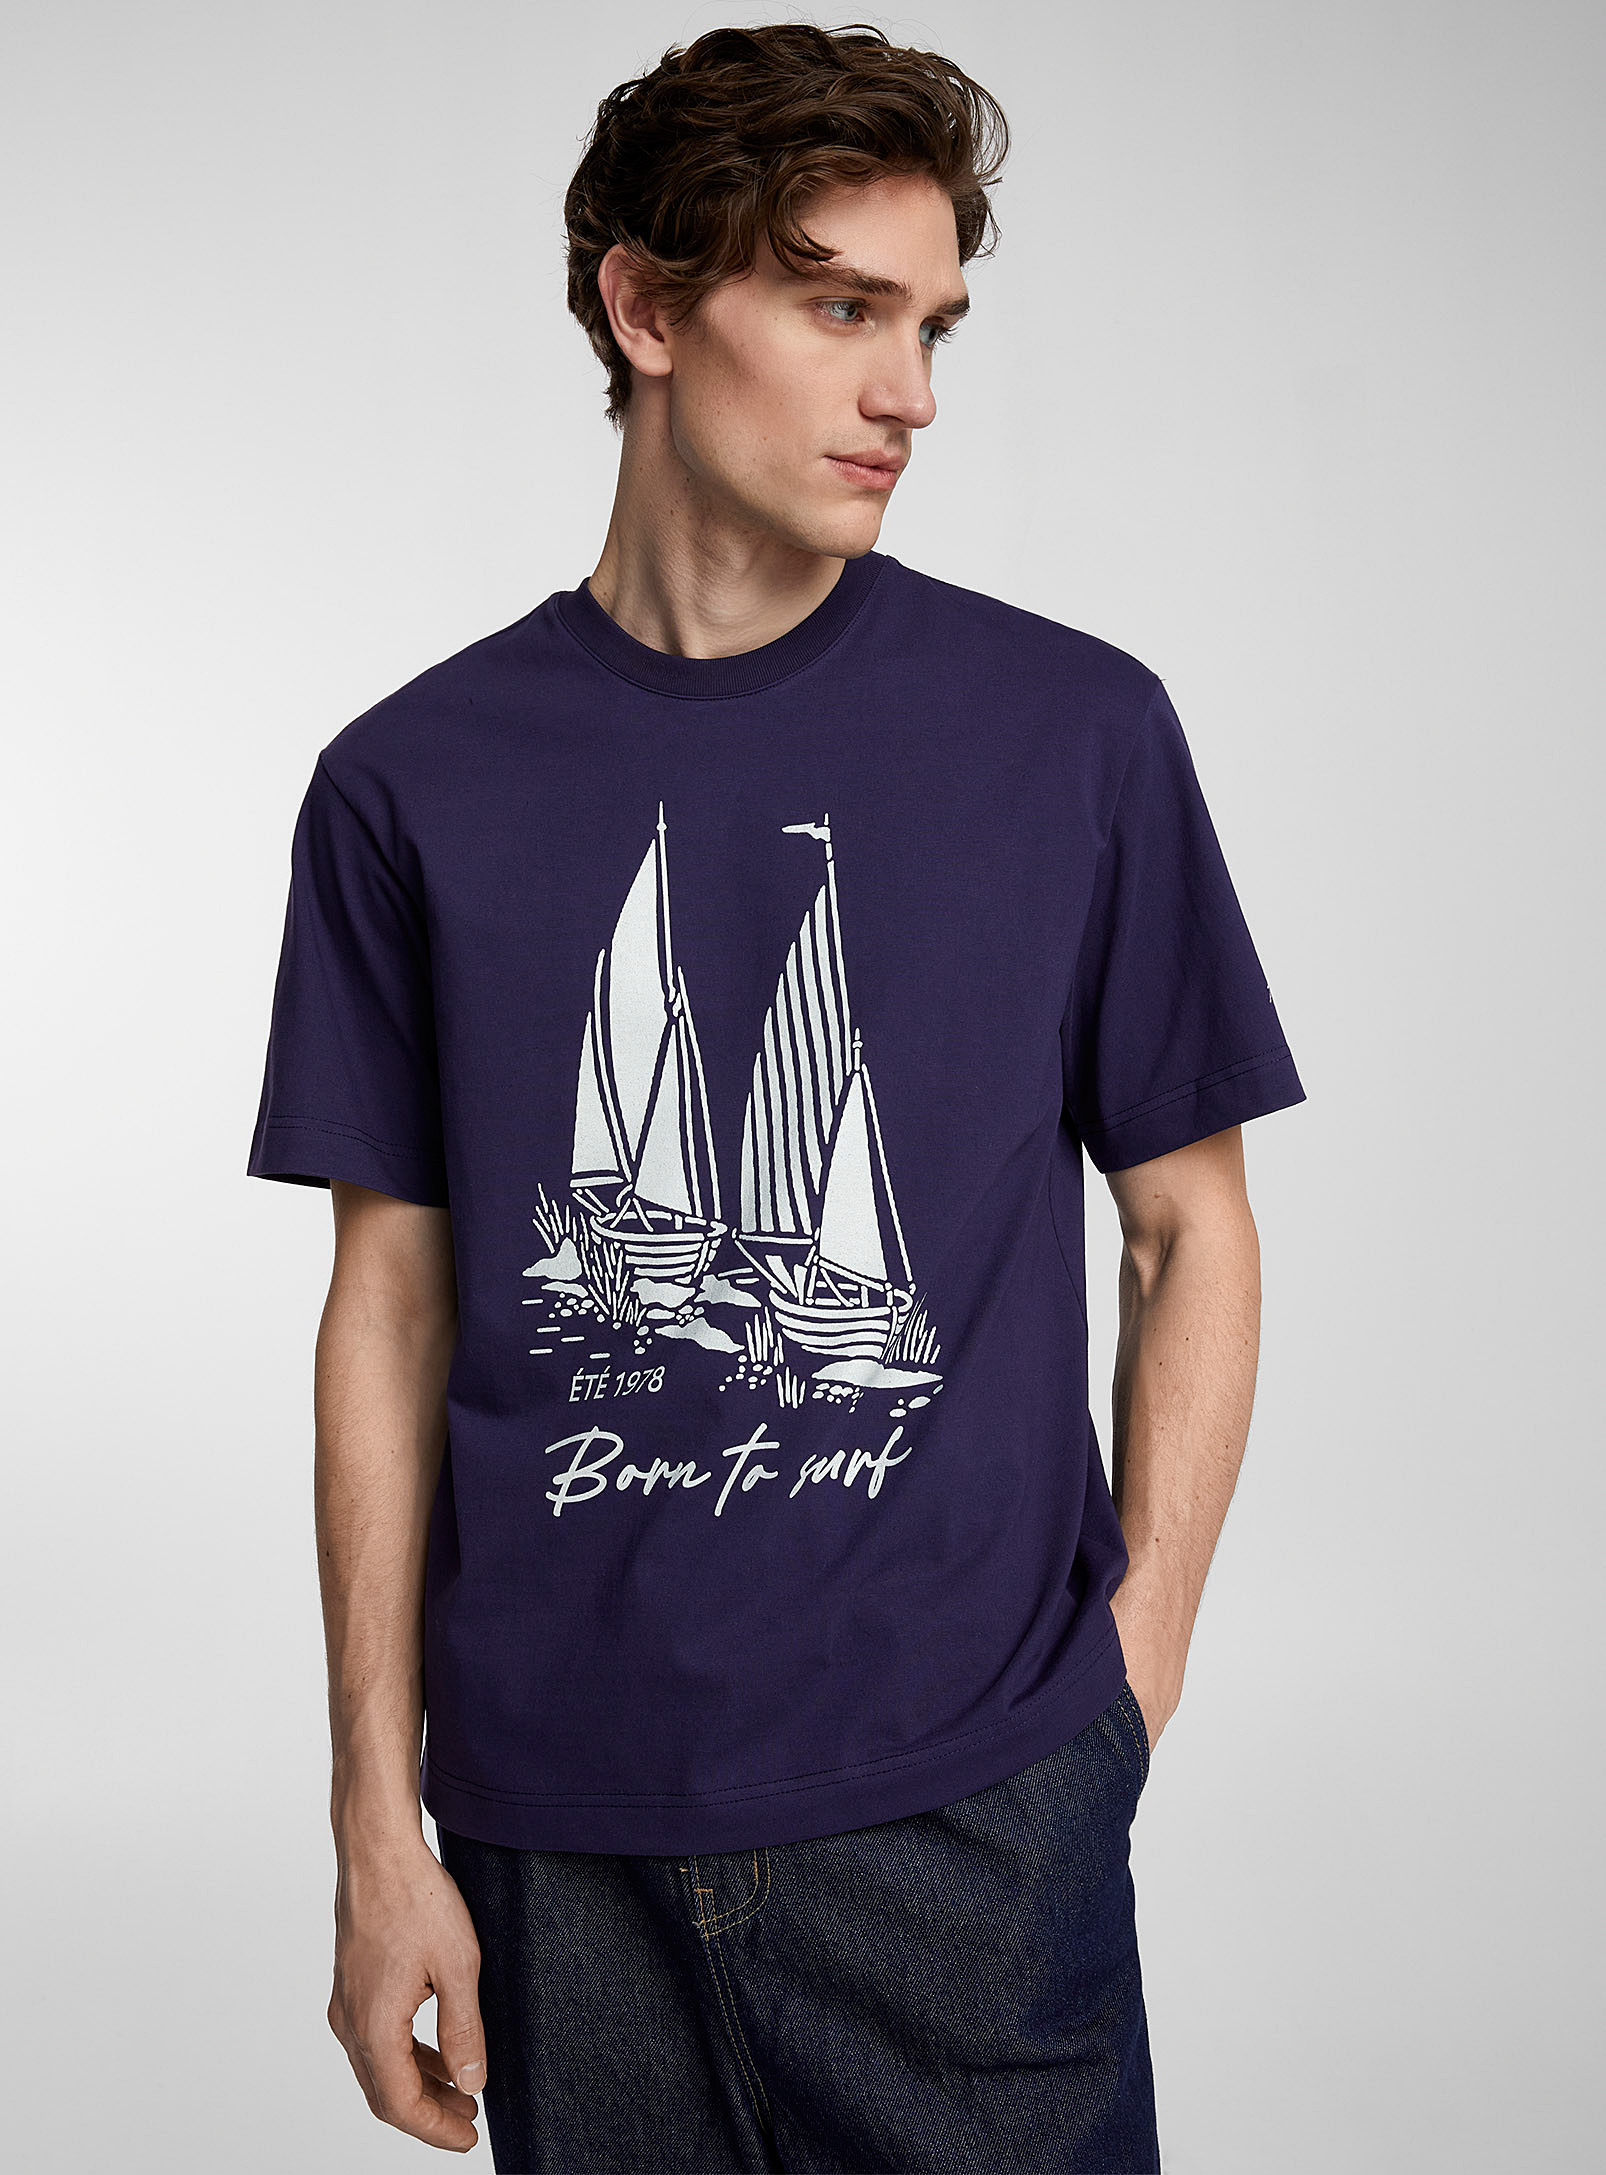 AFTER PRAY - Le t-shirt nautique imprimé contraste